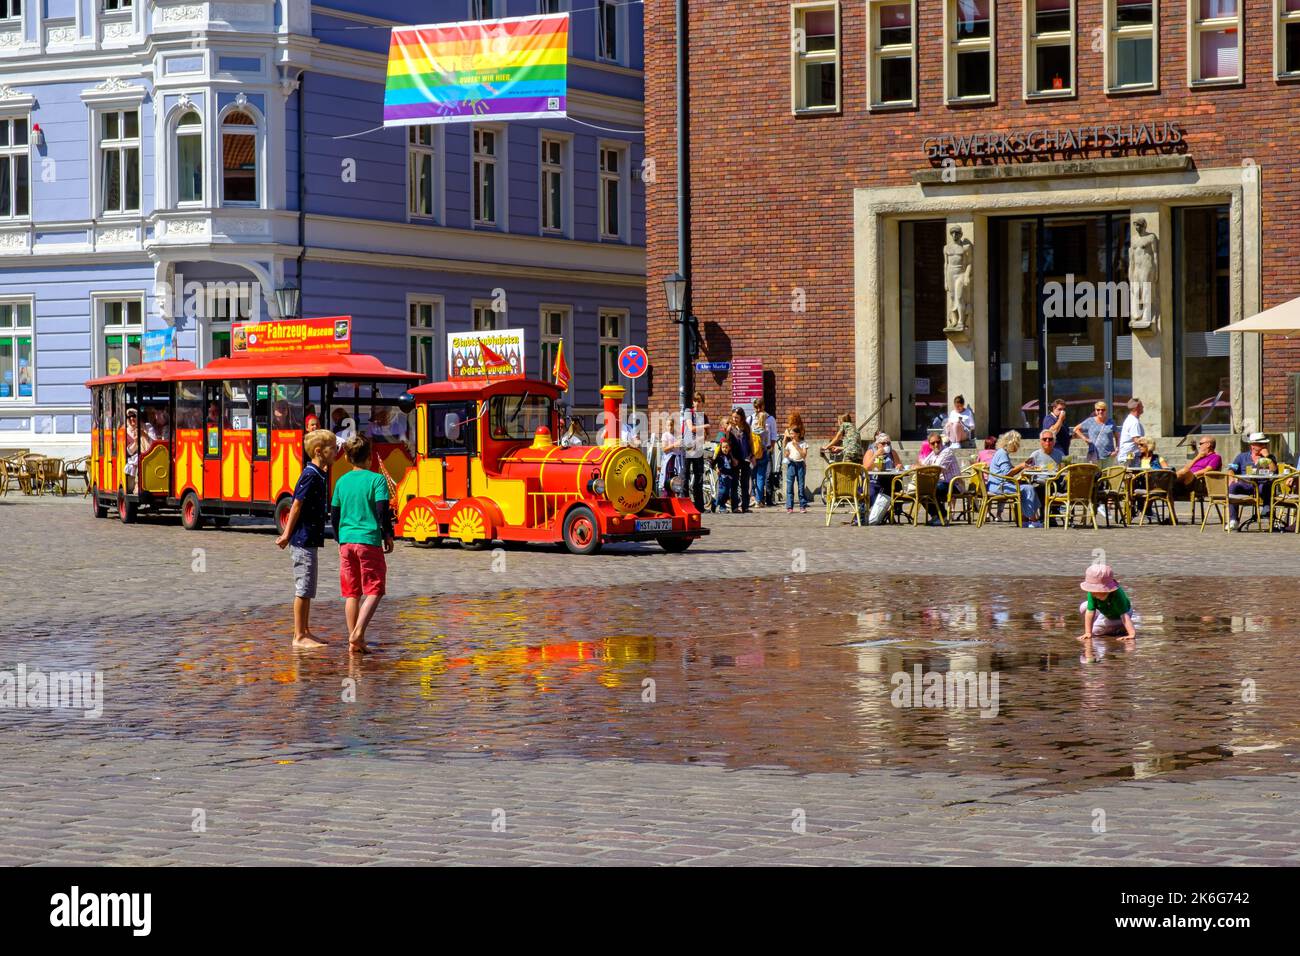 Scène touristique d'été typique pour la saison de vacances sur la place du Vieux marché, ville hanséatique de Stralsund, Mecklenburg-Poméranie occidentale, Allemagne. Banque D'Images